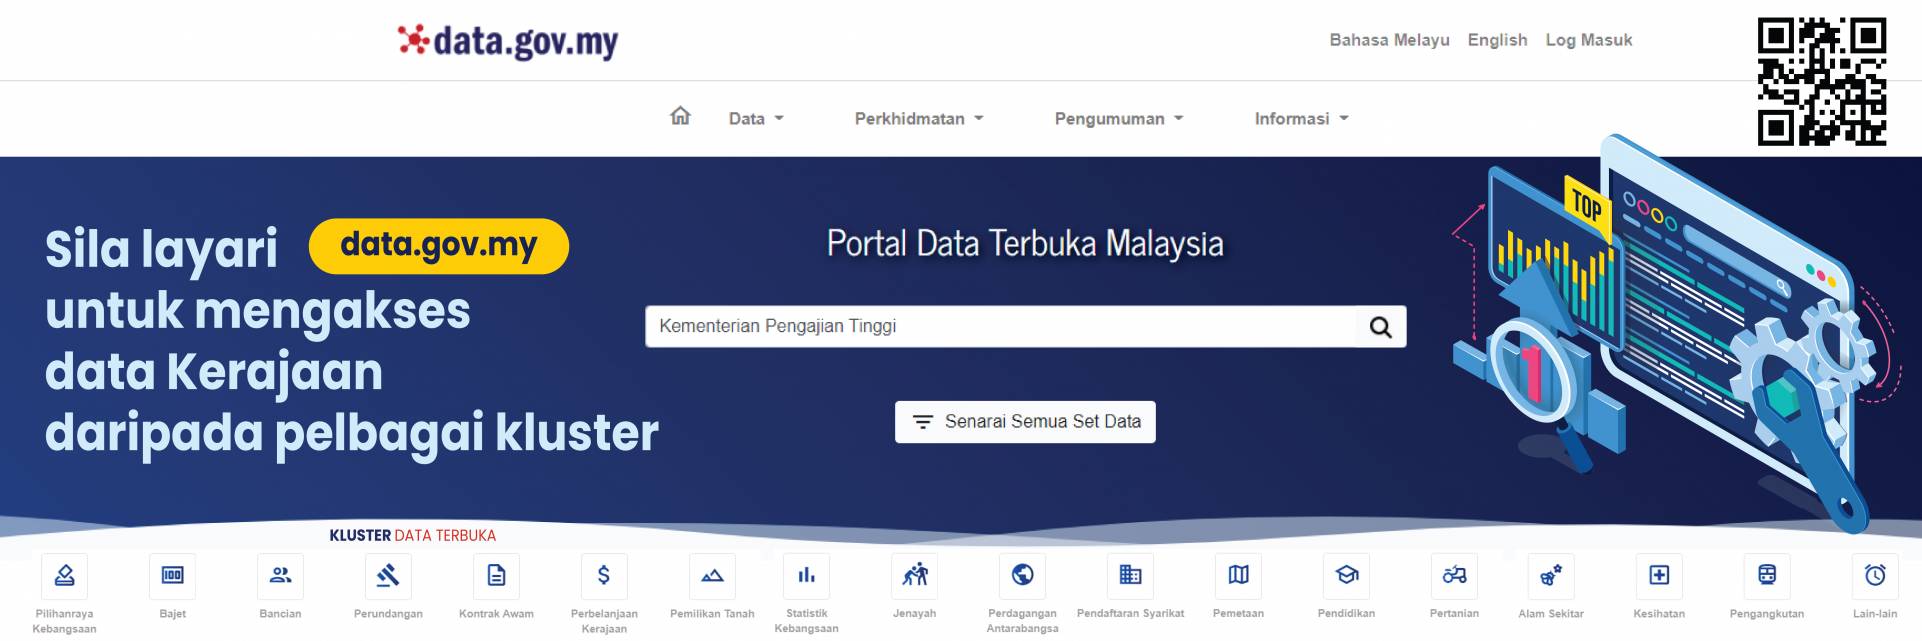 Portal Data Terbuka